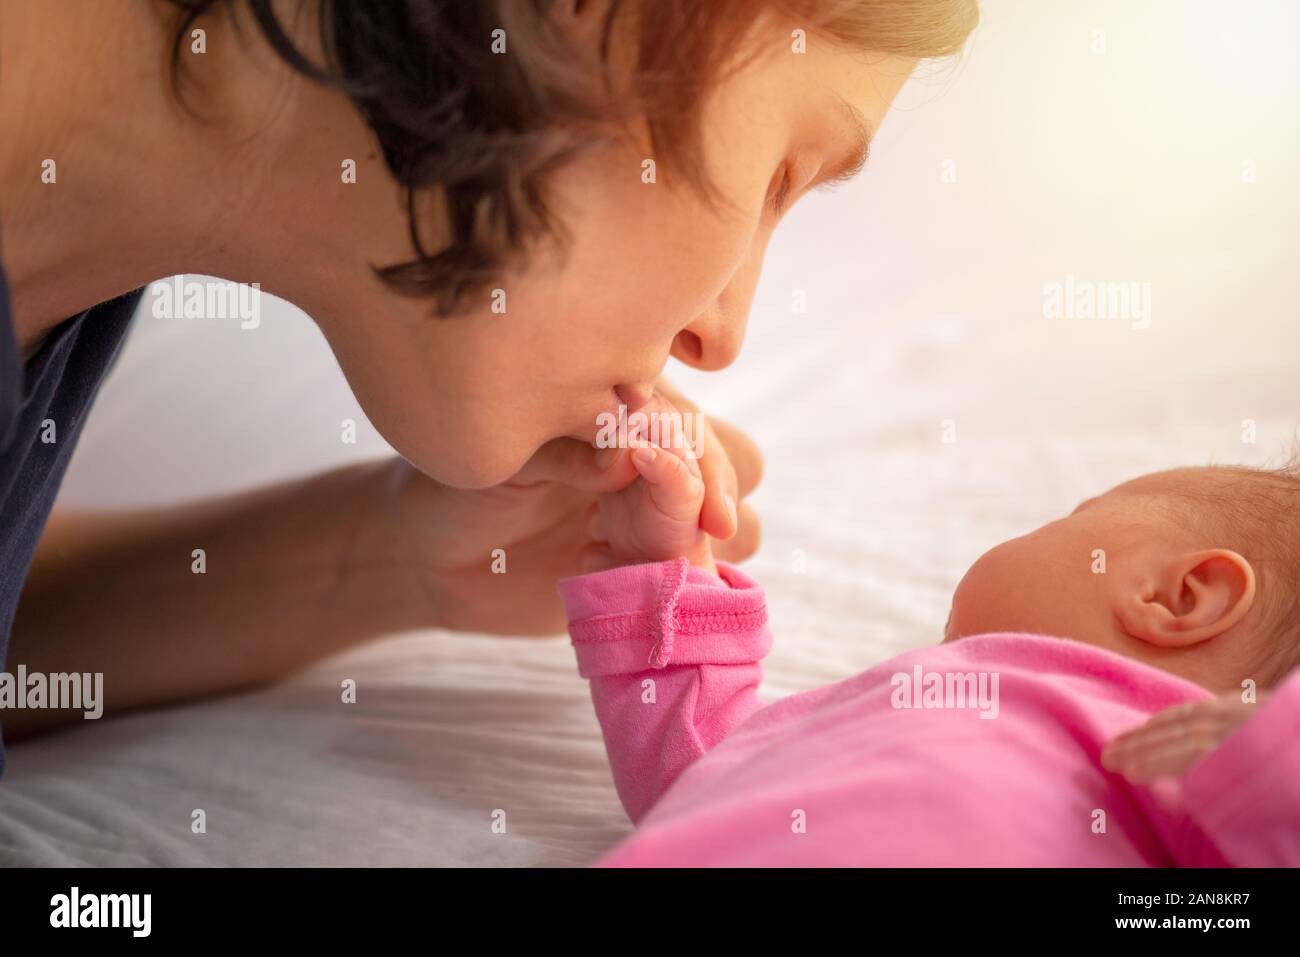 Mère embrasse la main du nouveau-né Banque D'Images